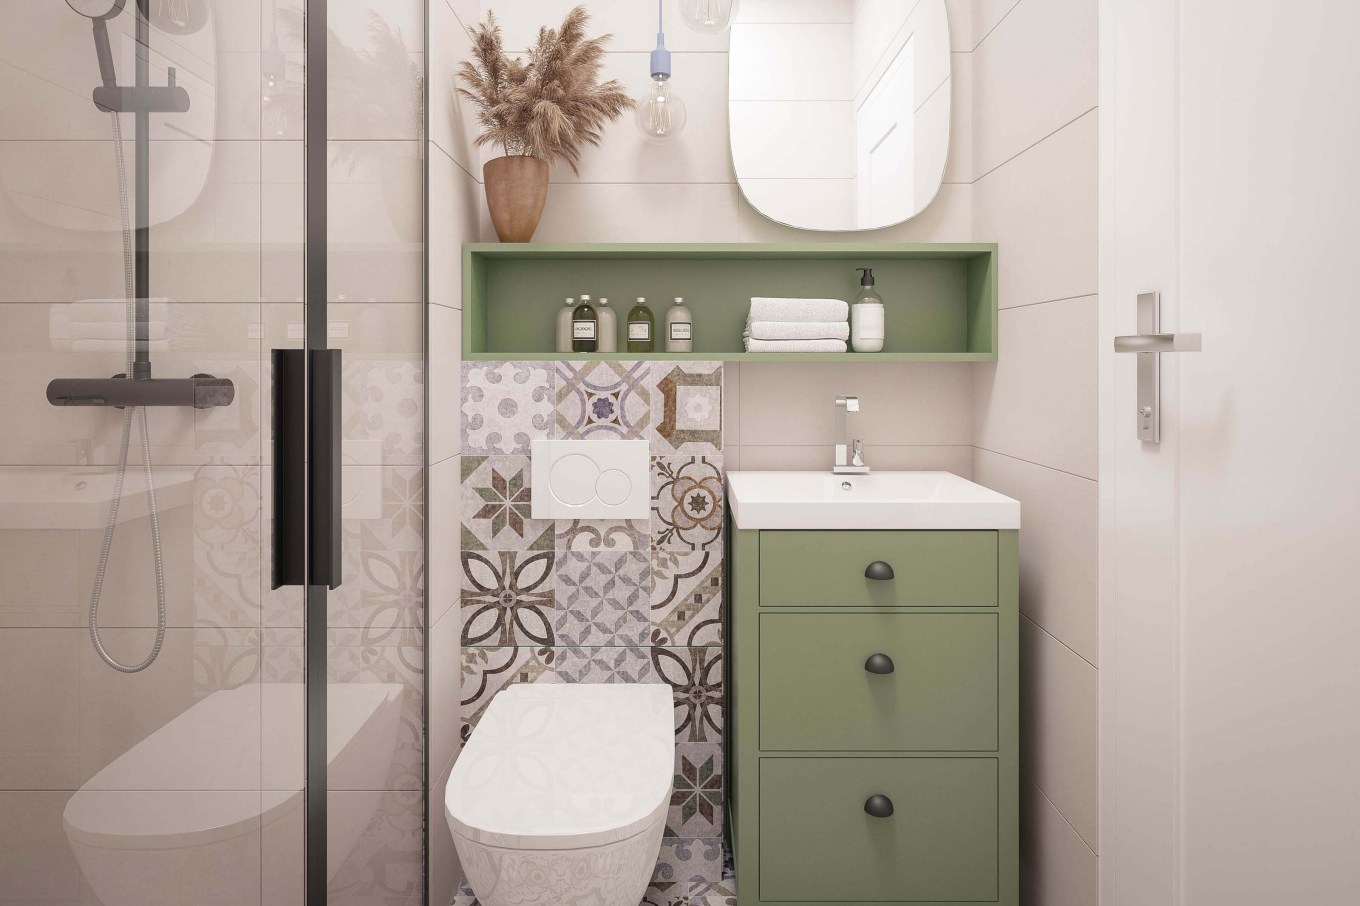 21 Bathroom Shelf Ideas That Add Storage and Look Great